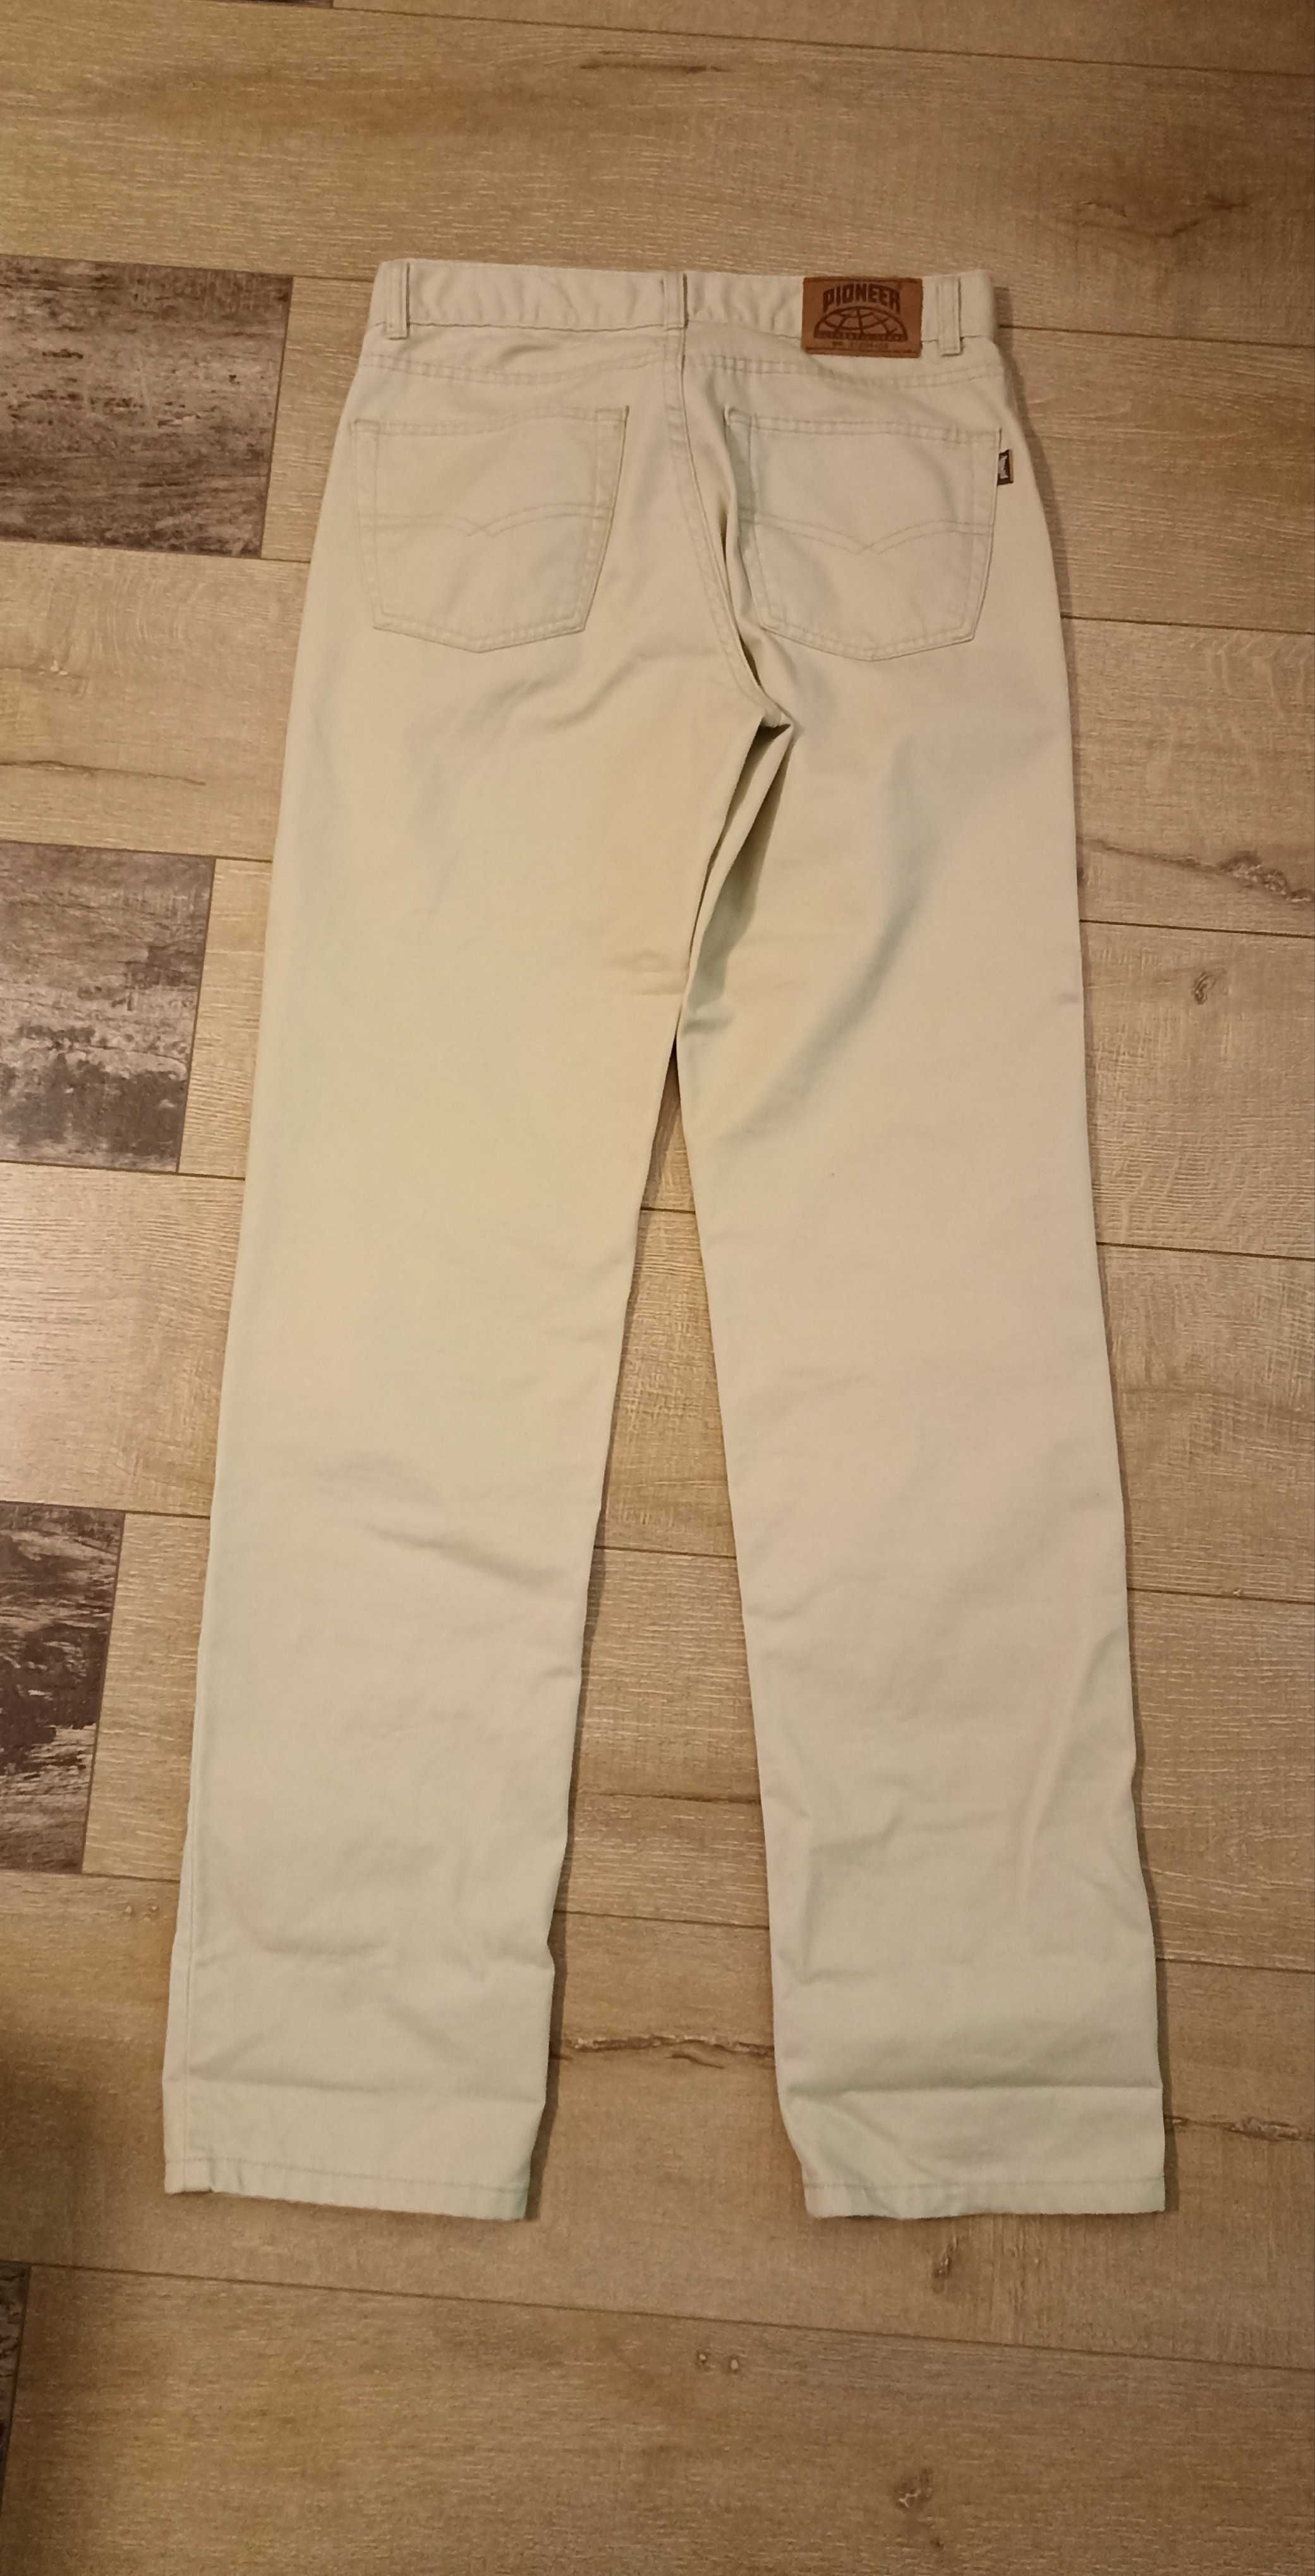 Джинсы брюки мужские Pioneer 32/34 светлые бежевые прямые длинные